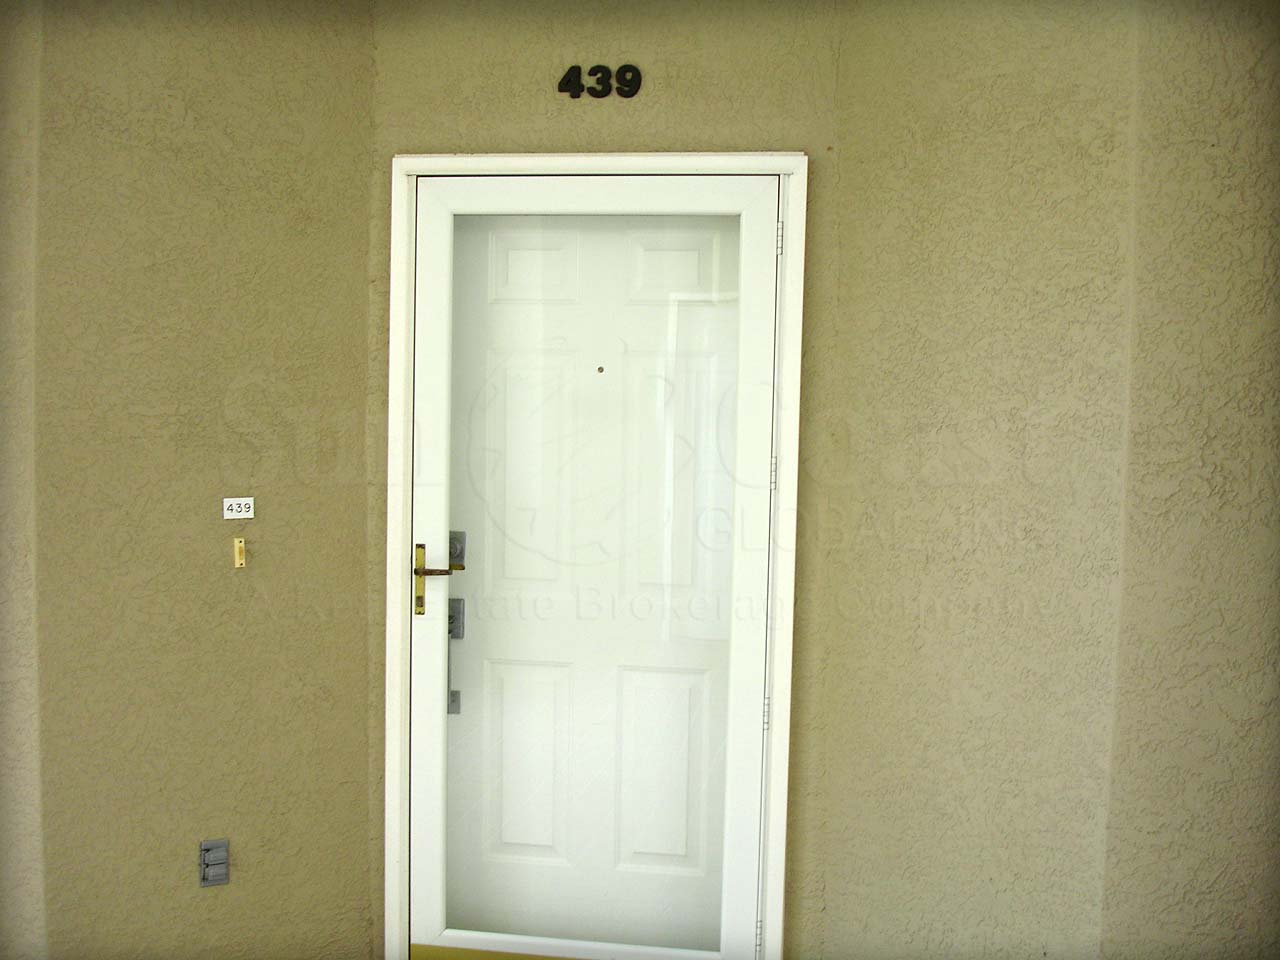 Benchmark Doorway